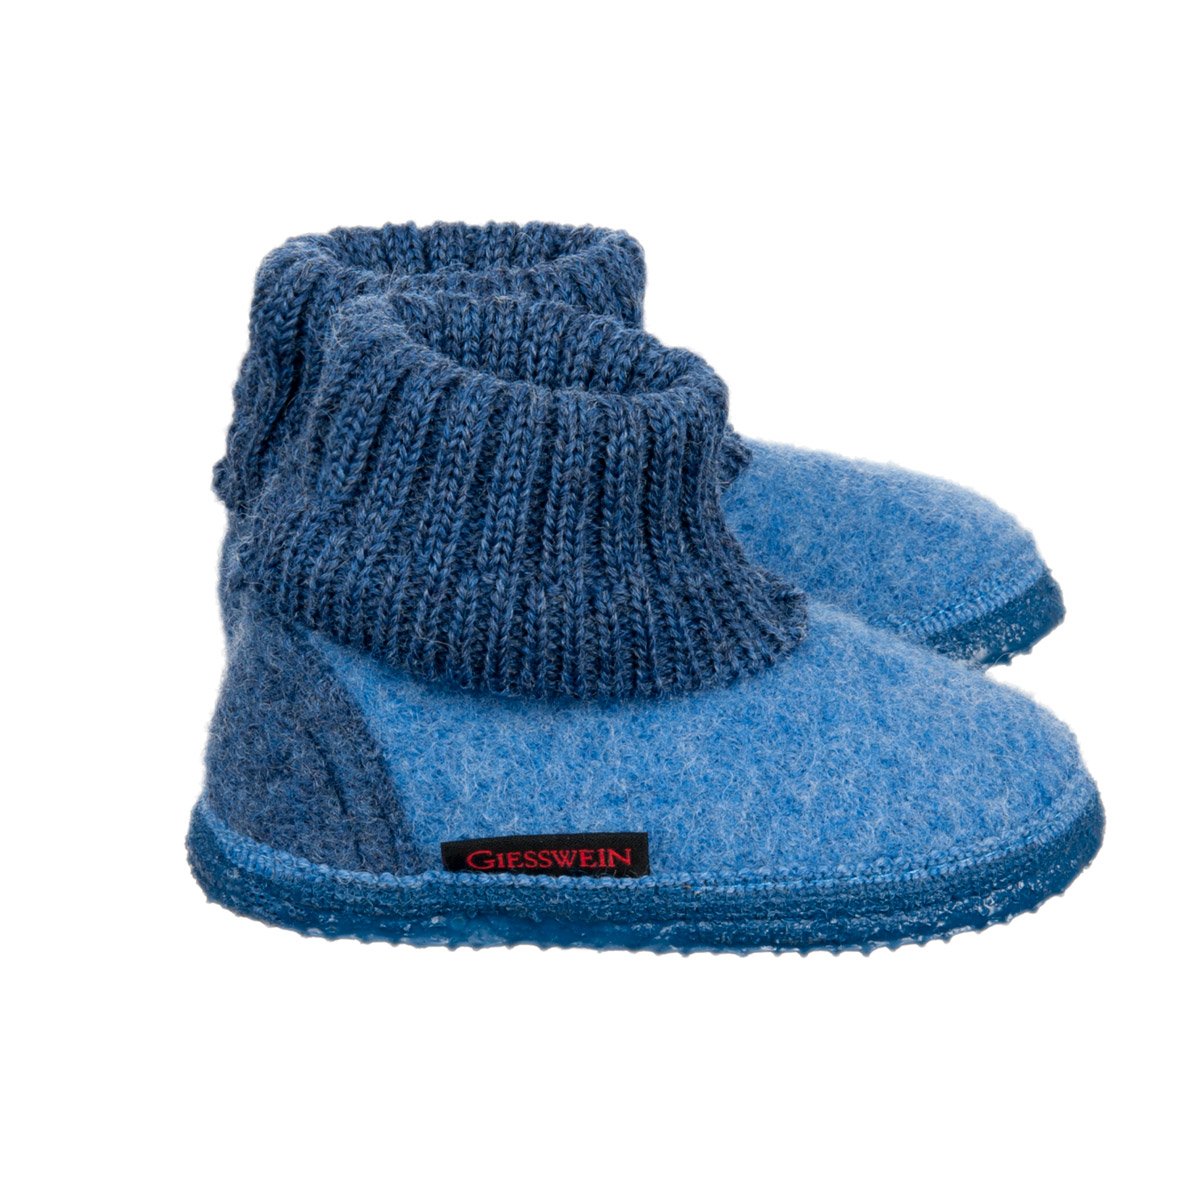 nederlag fravær Krønike Giesswein slippers for children and adults with non-slip sole model Kramsach